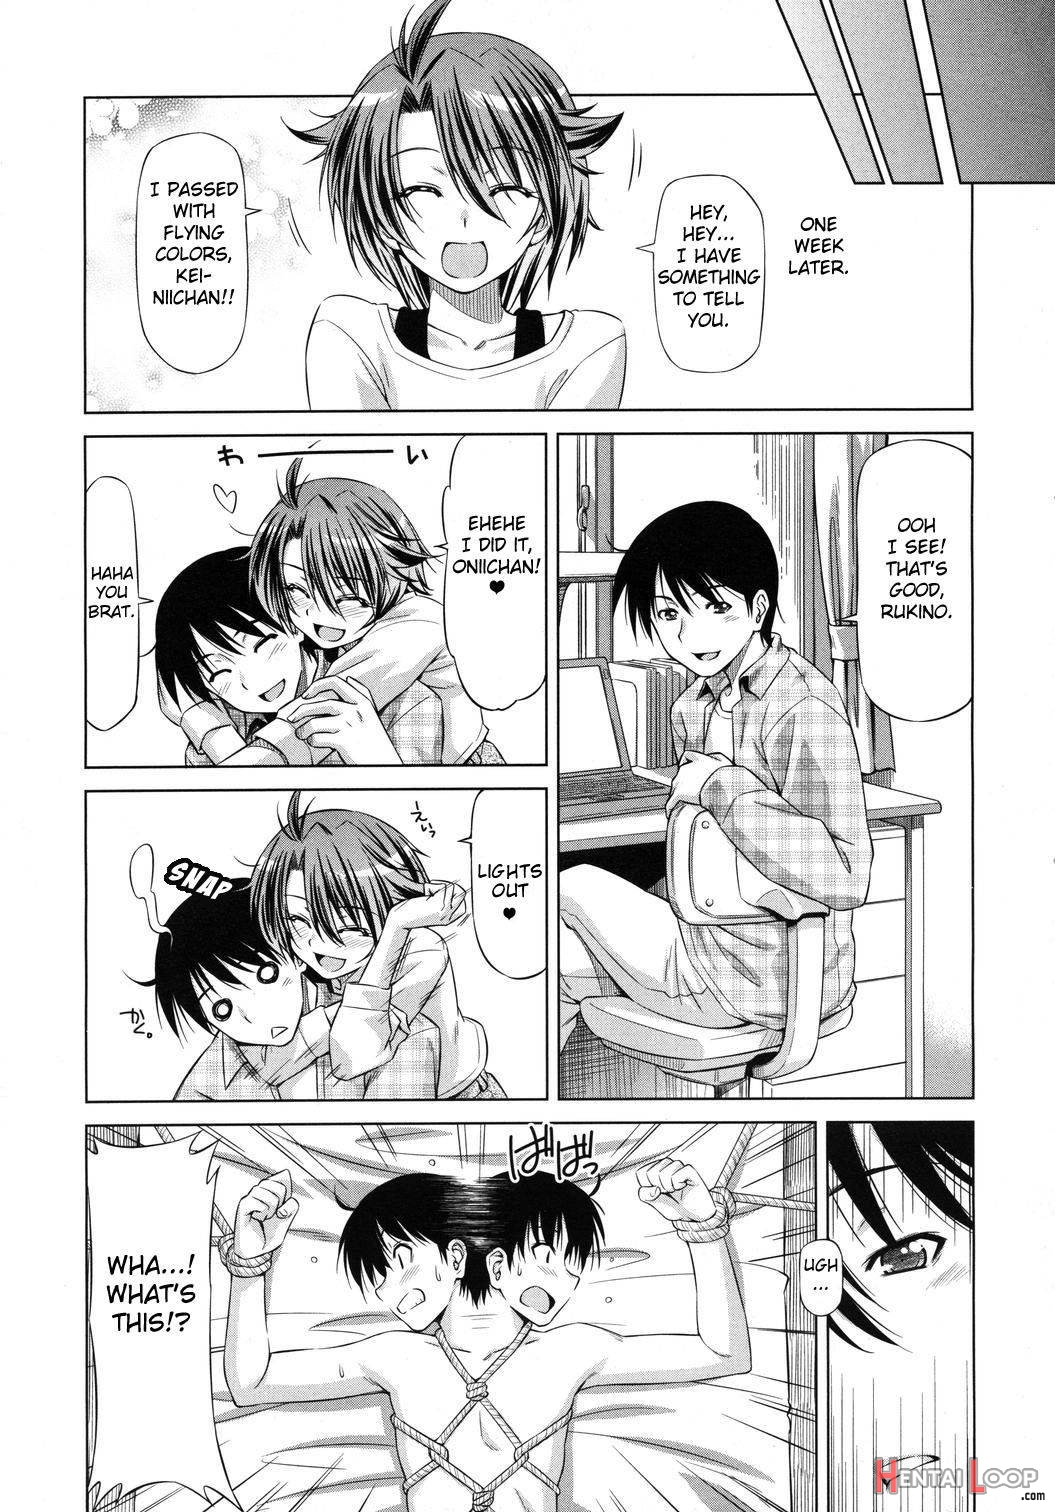 Rukino Versus Kei-niichan page 23